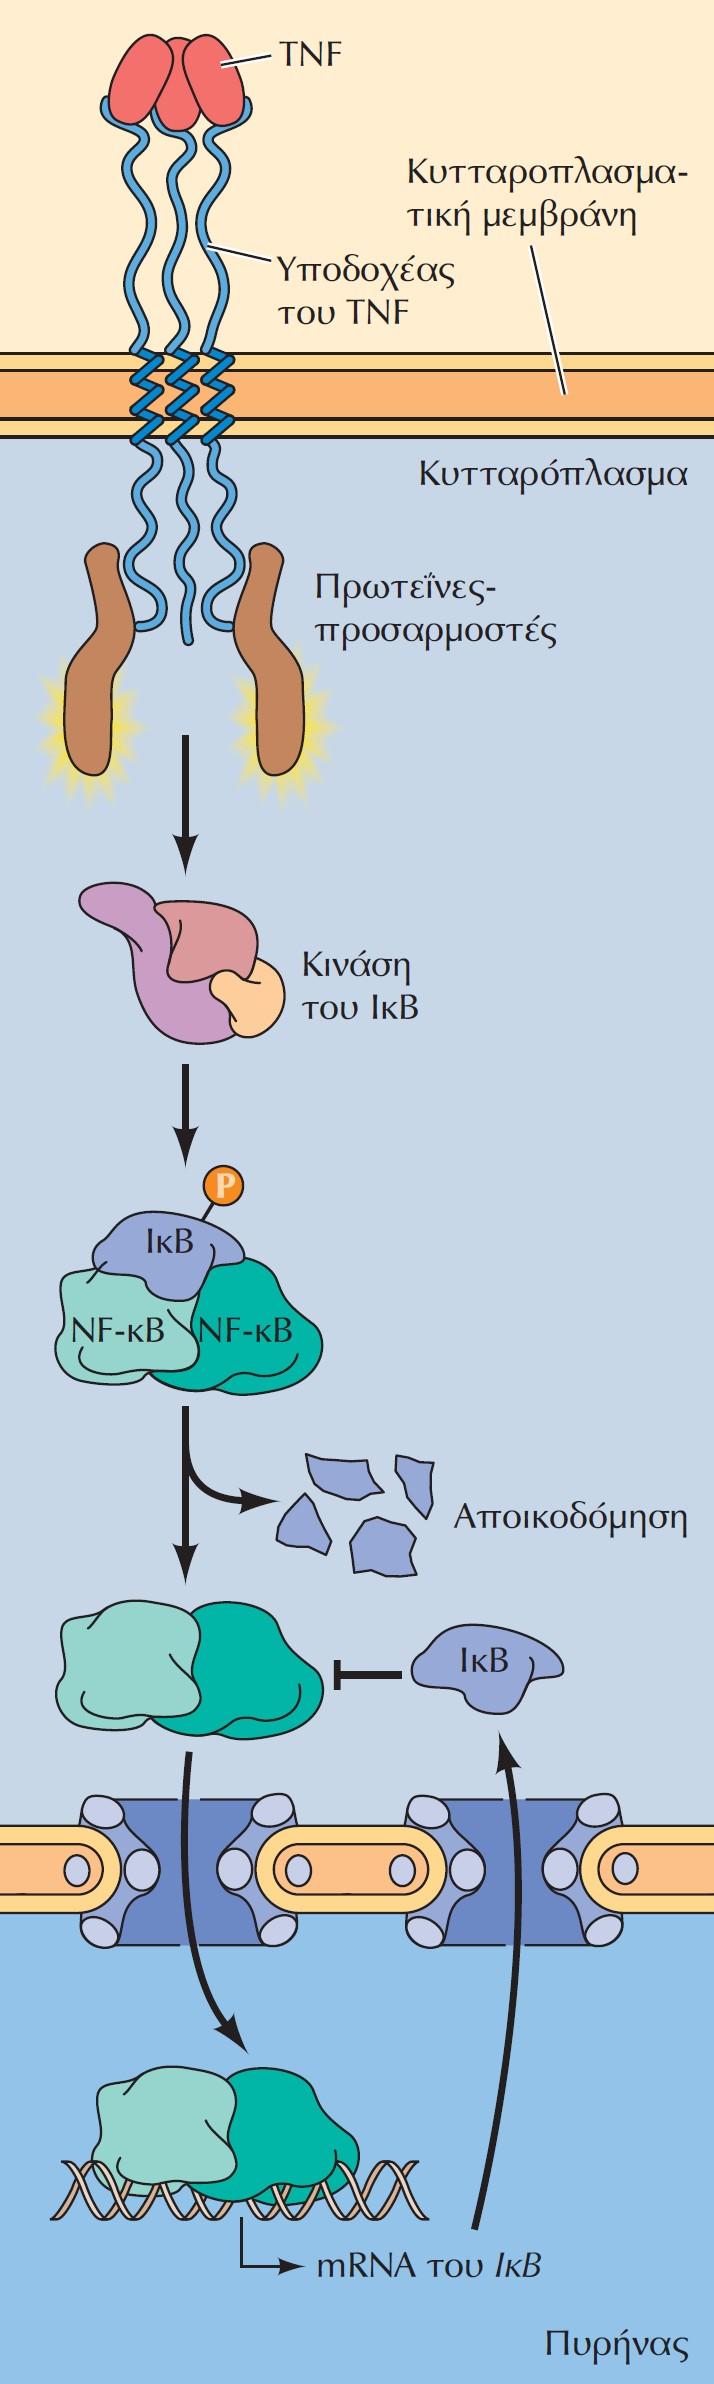 Καταστολή του μονοπατιού του NF-κB με αρνητική ανάδραση. Ο NF-κB ενεργοποιείται ως αποτέλεσμα φωσφορυλίωσης και αποικοδόμησης του IκB.